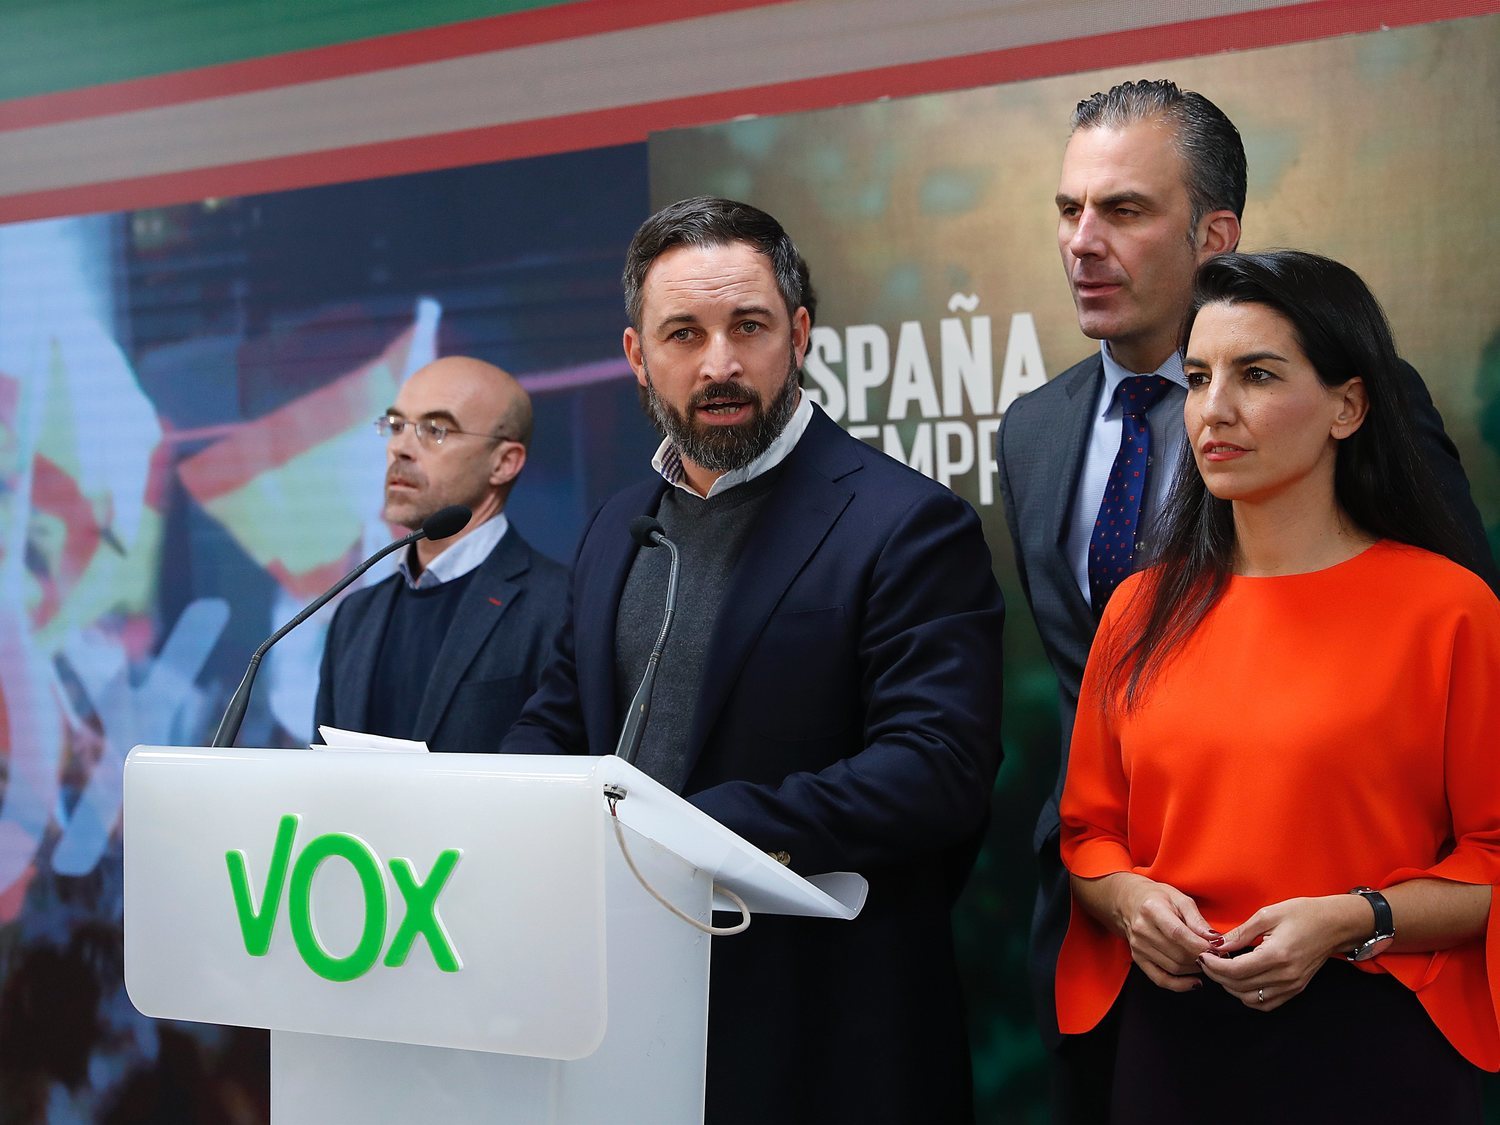 VOX recibirá una subvención de 10,67 millones de euros pese a que propone eliminarlas